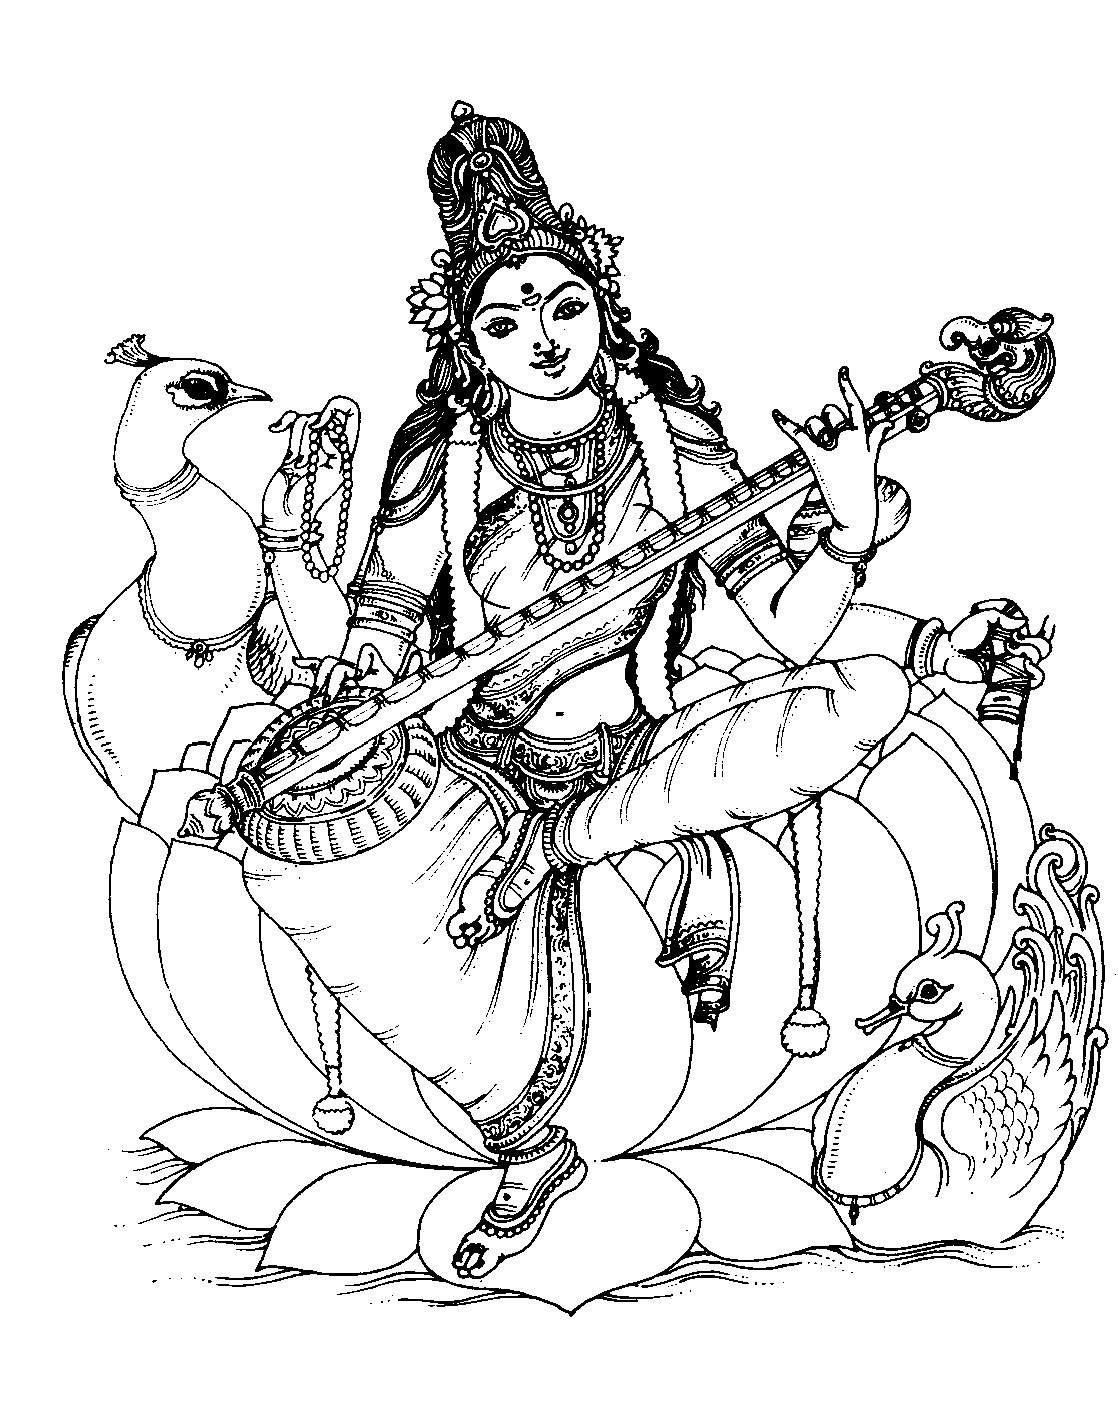 Coloriage gratuit de Saraswati : Il s'agit de l'épouse de Brahma, créateur de l'Univers d'après la mythologie hindoue